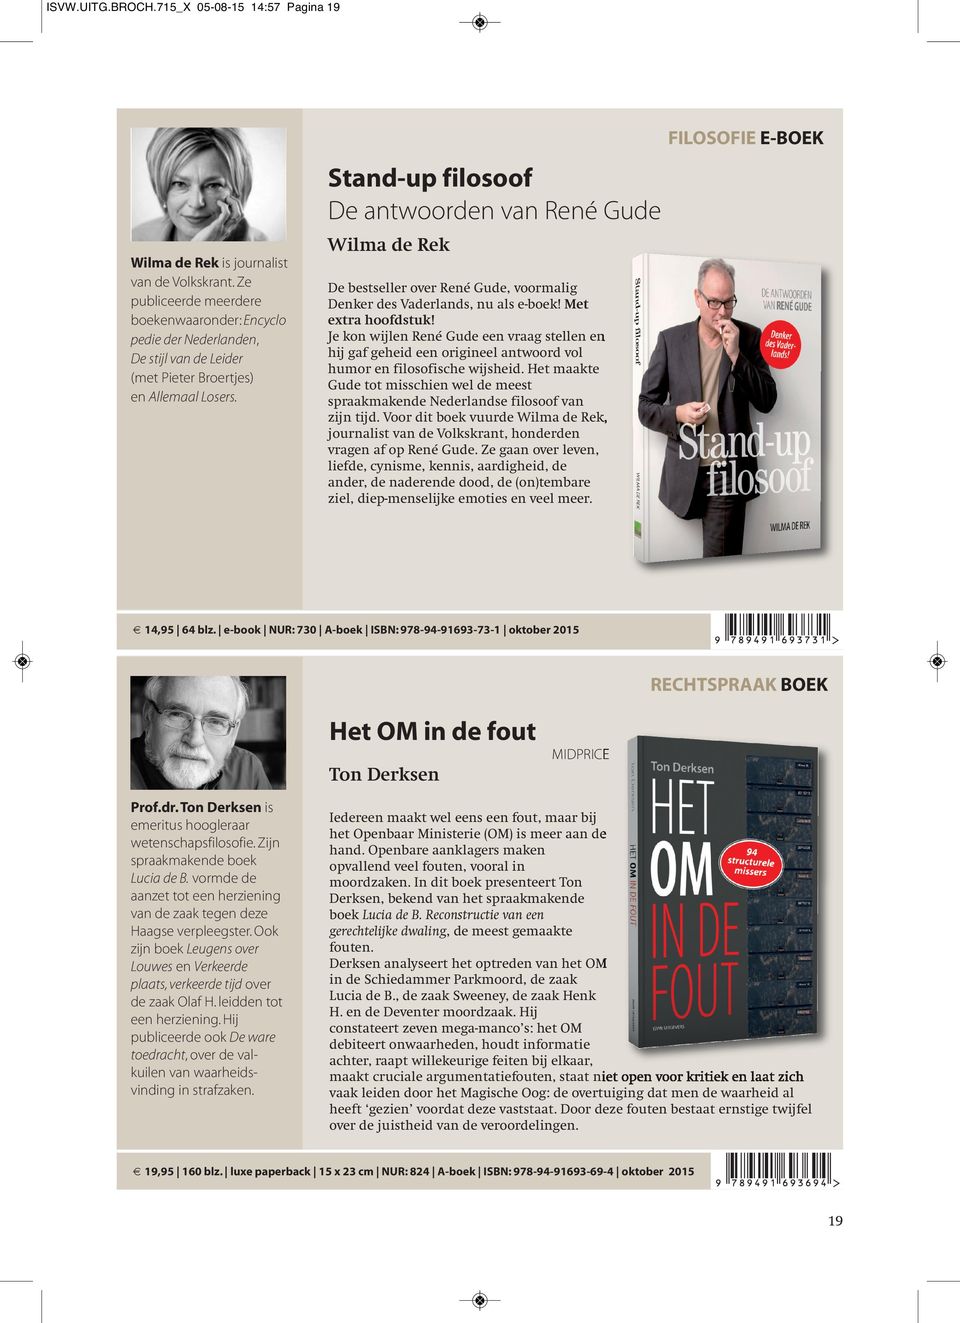 Stand-up filosoof De antwoorden van René Gude Wilma de Rek De bestseller over René Gude, voormalig Denker des Vaderlands, nu als e-boek! Met extra hoofdstuk!